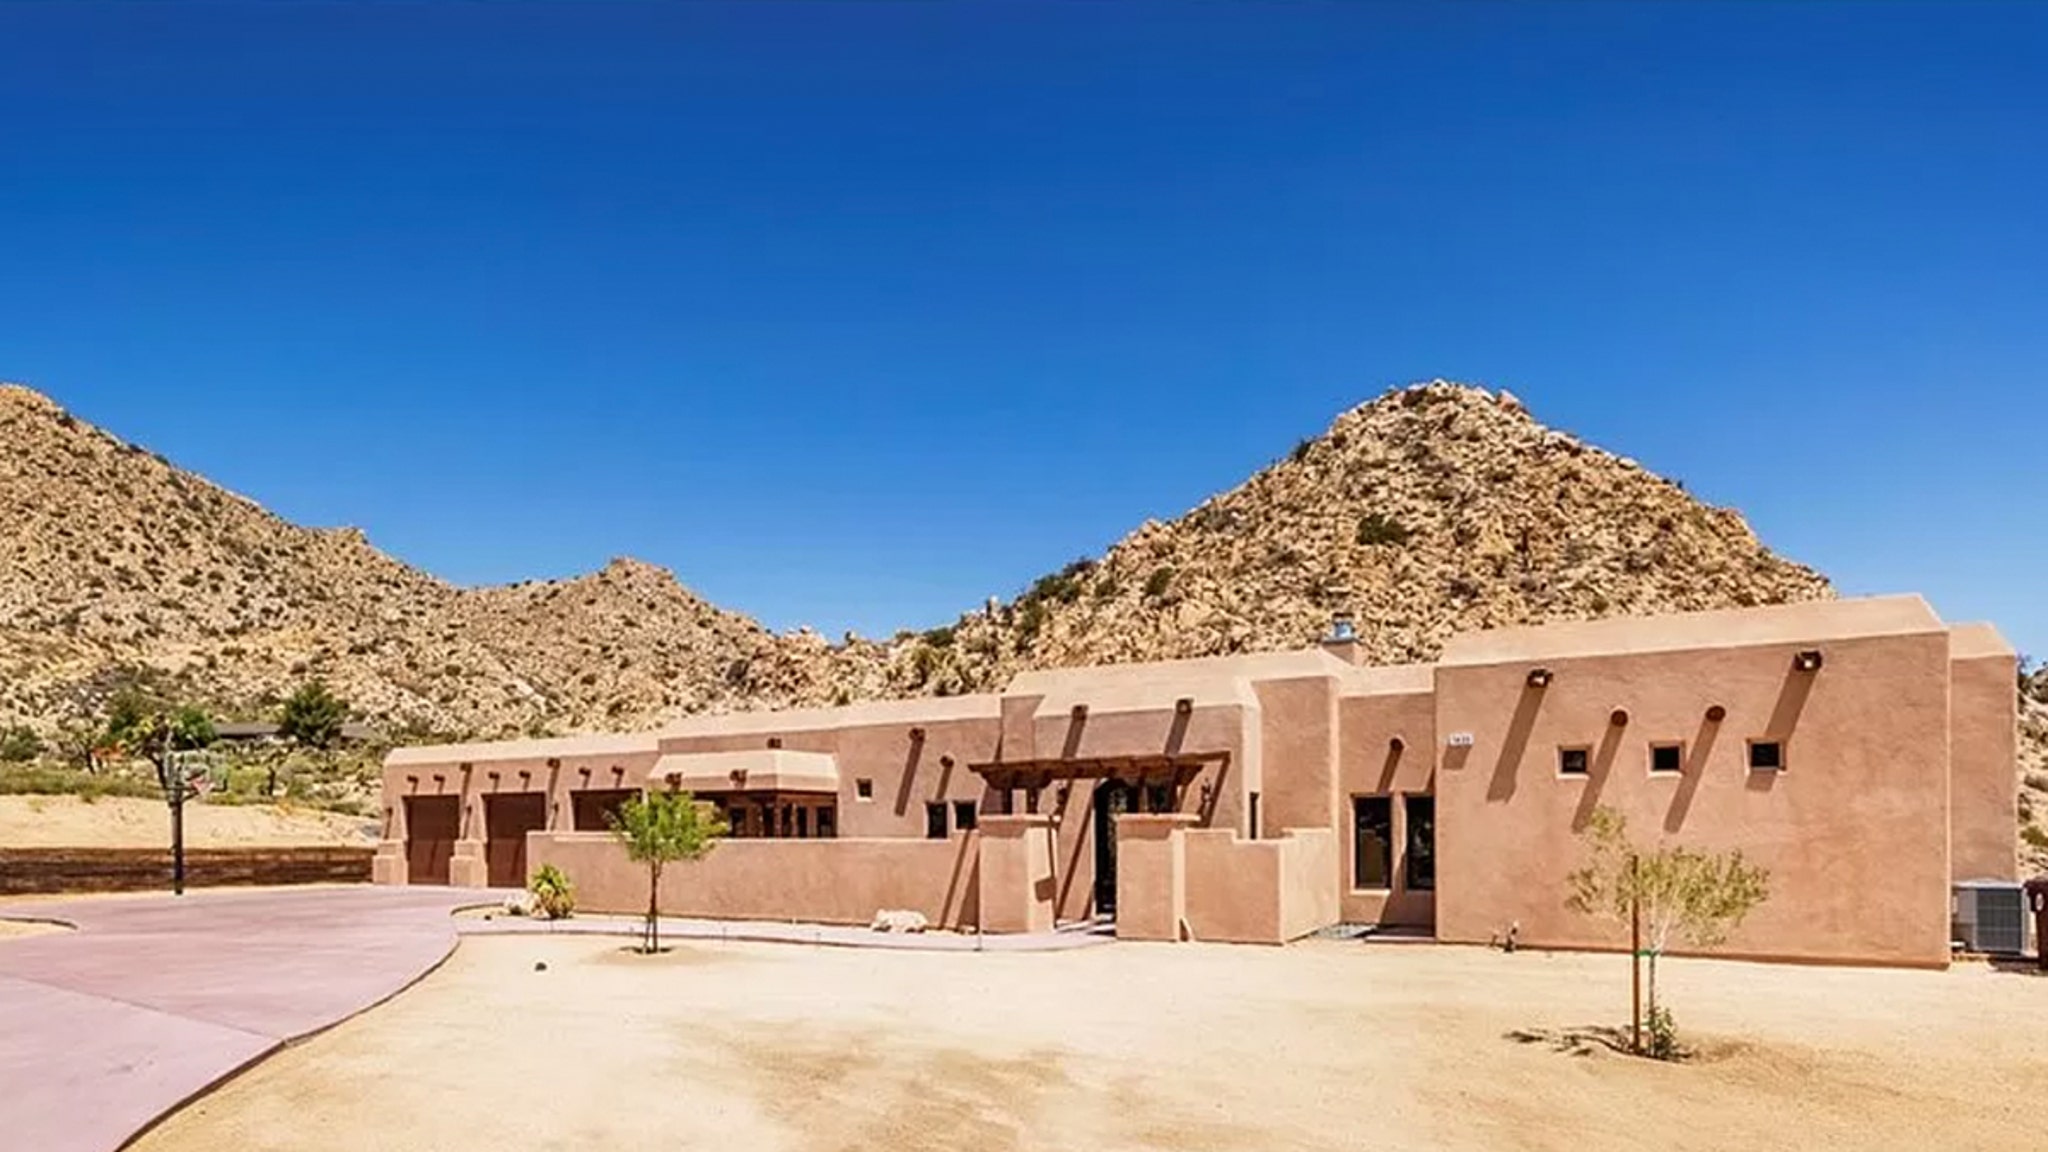 تبيع Amber Heard منزل Yucca Valley لتحقيق ربح كبير يزيد عن مليون دولار